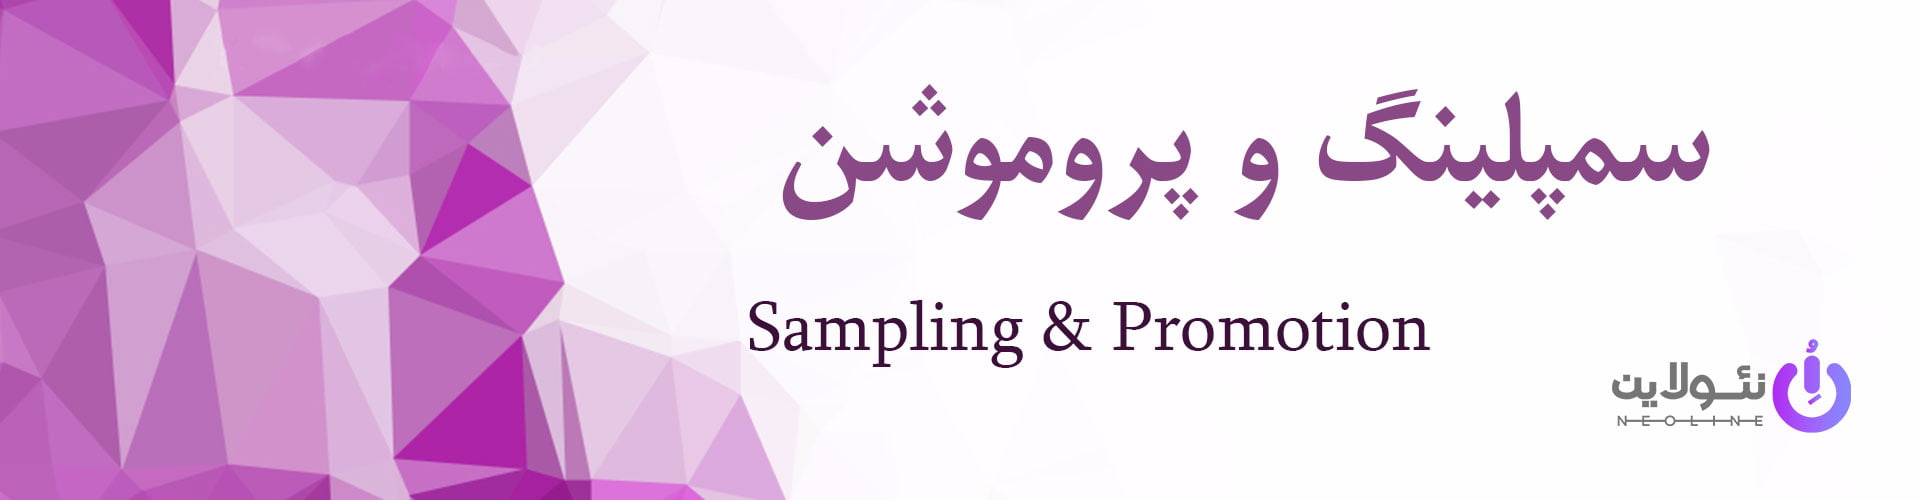 sampeling-&-promotion.edit-min